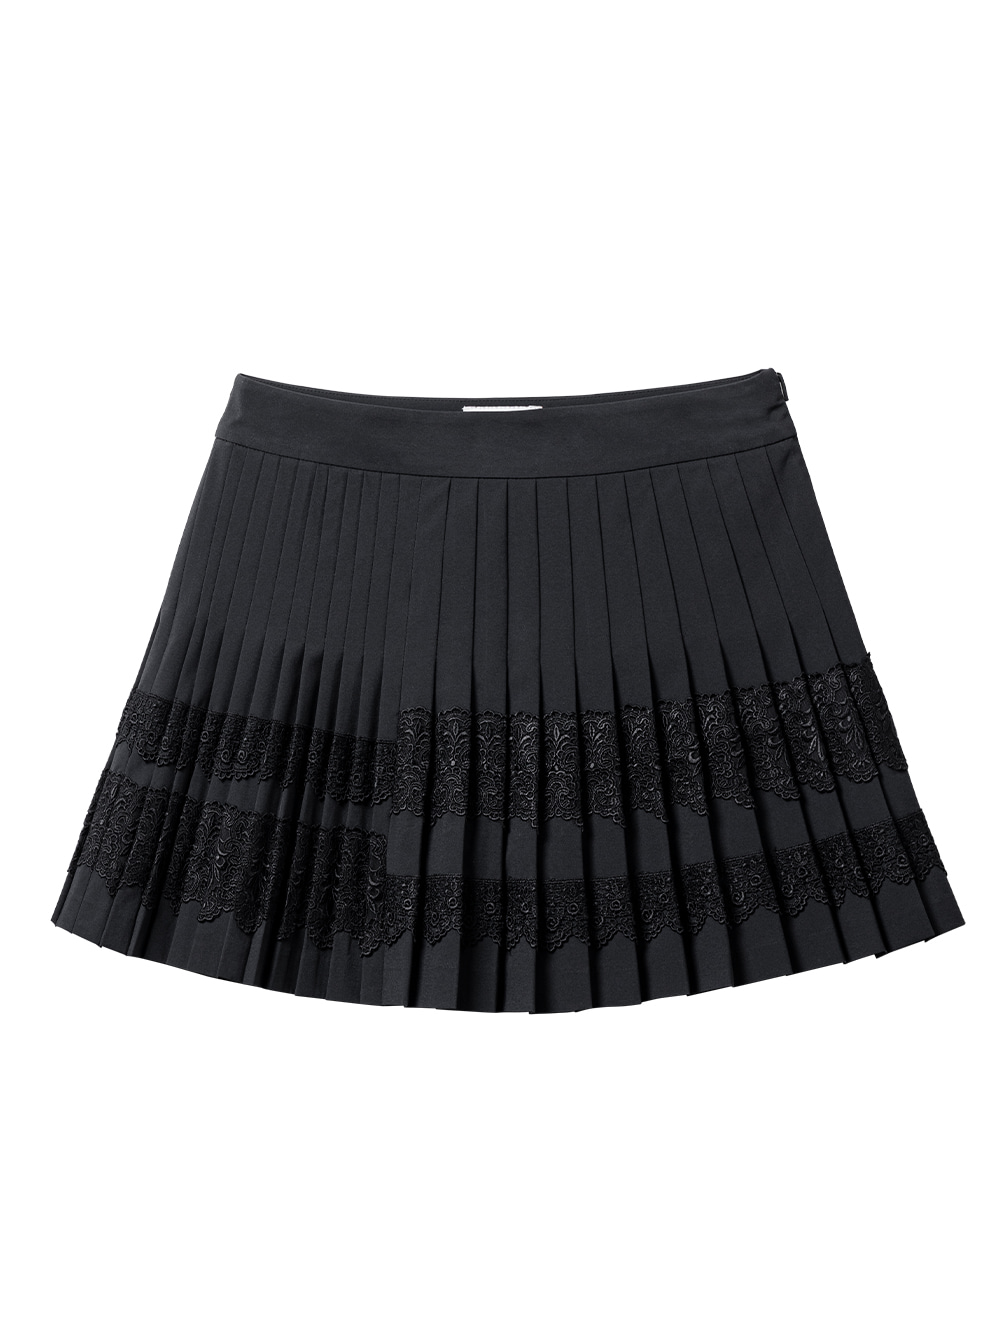 UTAA Lace Flare Skirt : Black (UB2SKF220BK)